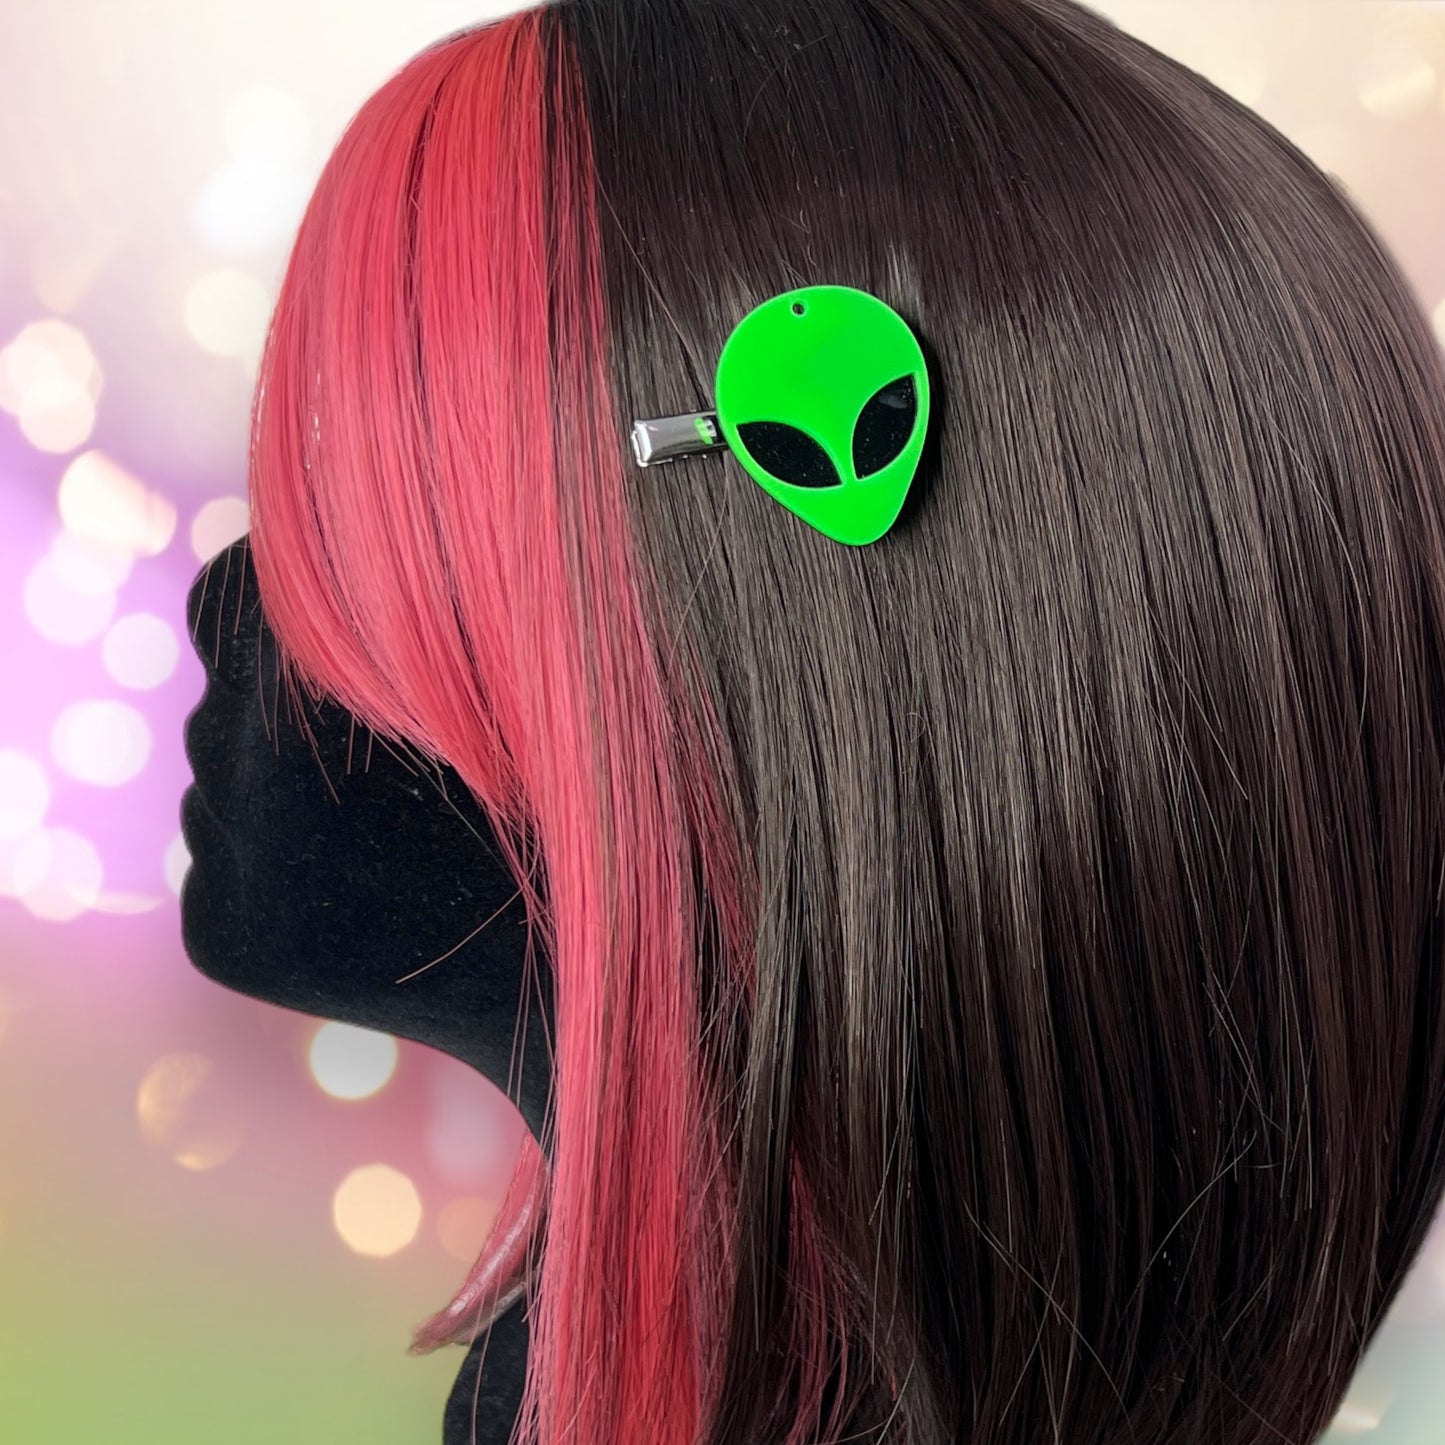 Cosmic Alien Hair Clips